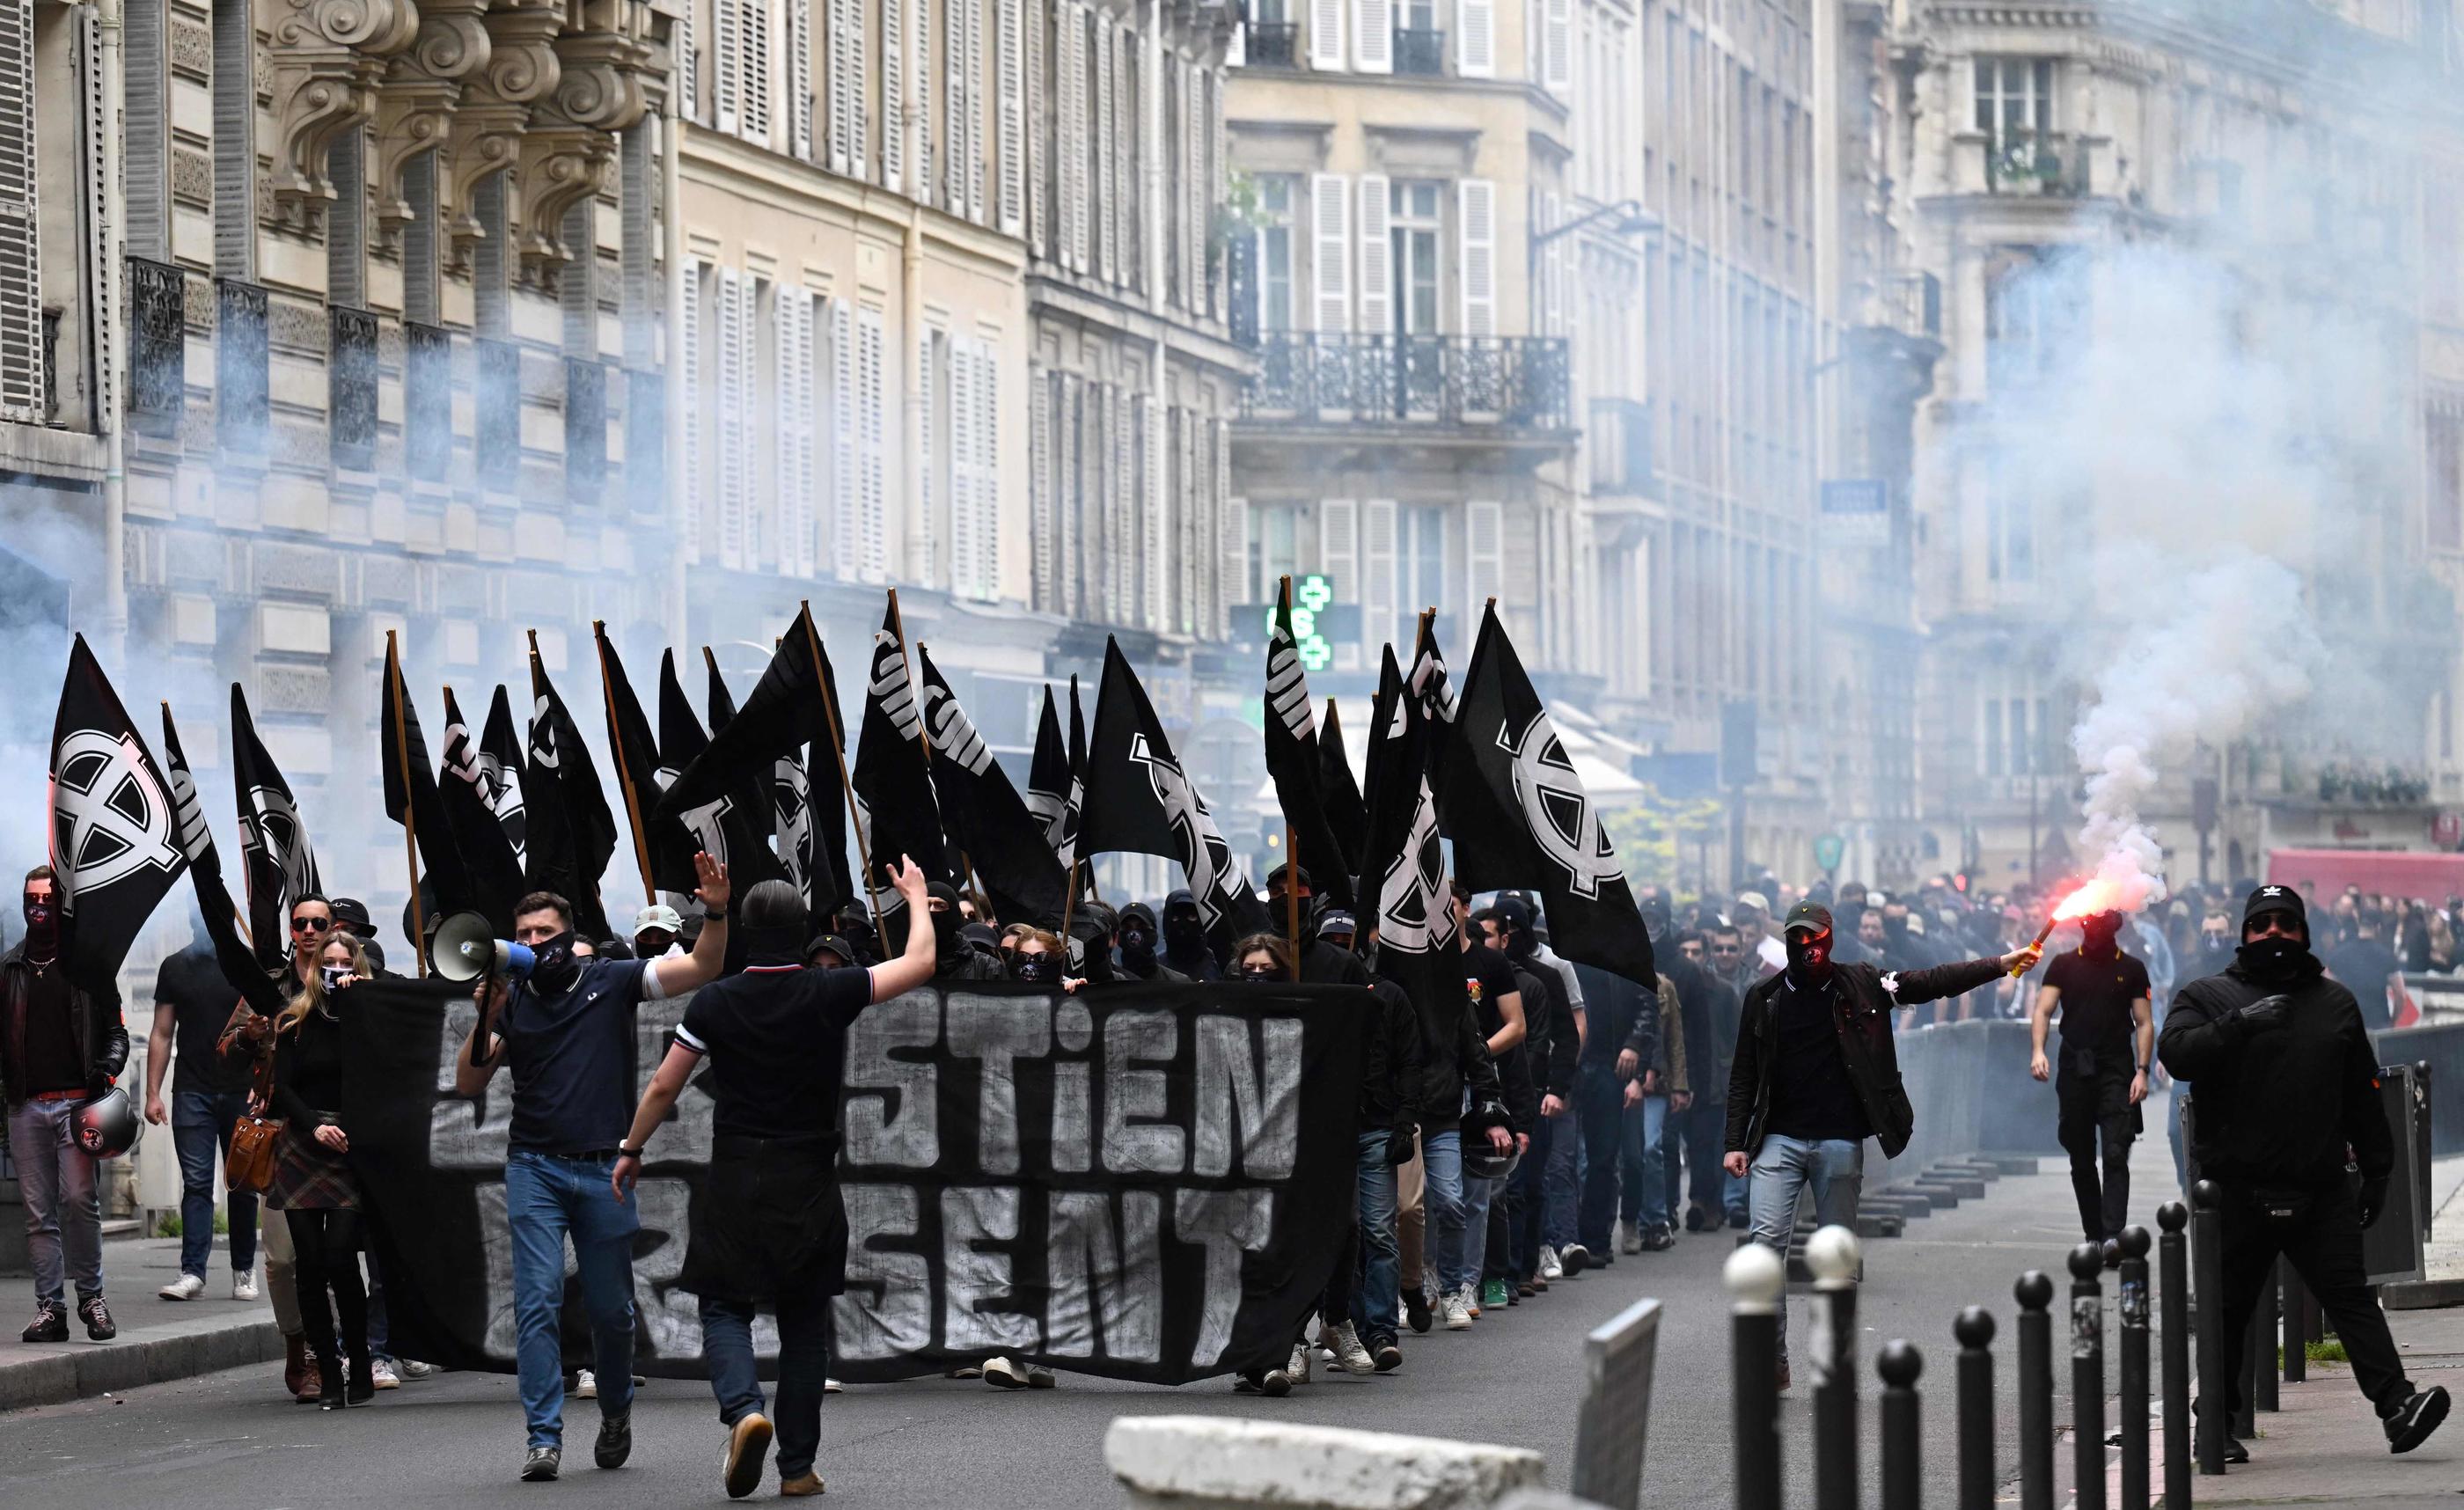 La manifestation autorisée de militants d'extrême droite avec des drapeaux du GUD, le 6 mai dernier à Paris, avait suscité la polémique. AFP/Emmanuel Dunand